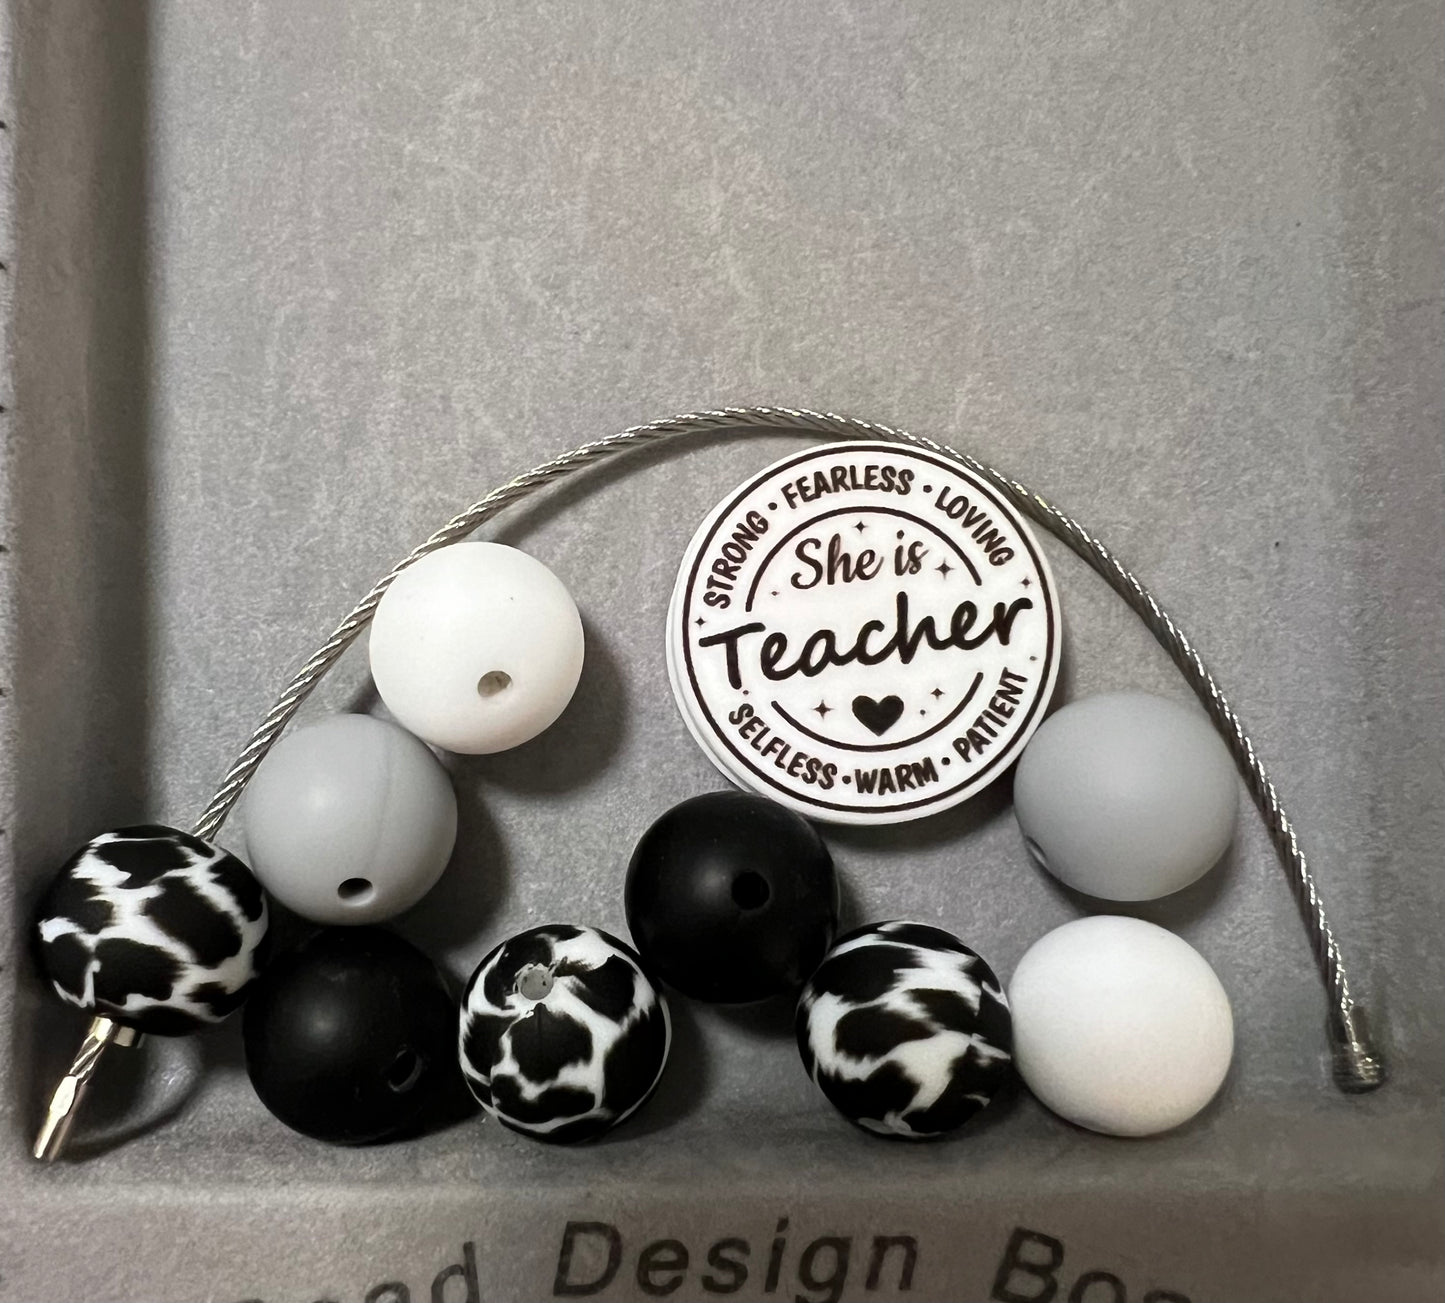 Cup Charm Kit - She is Teacher